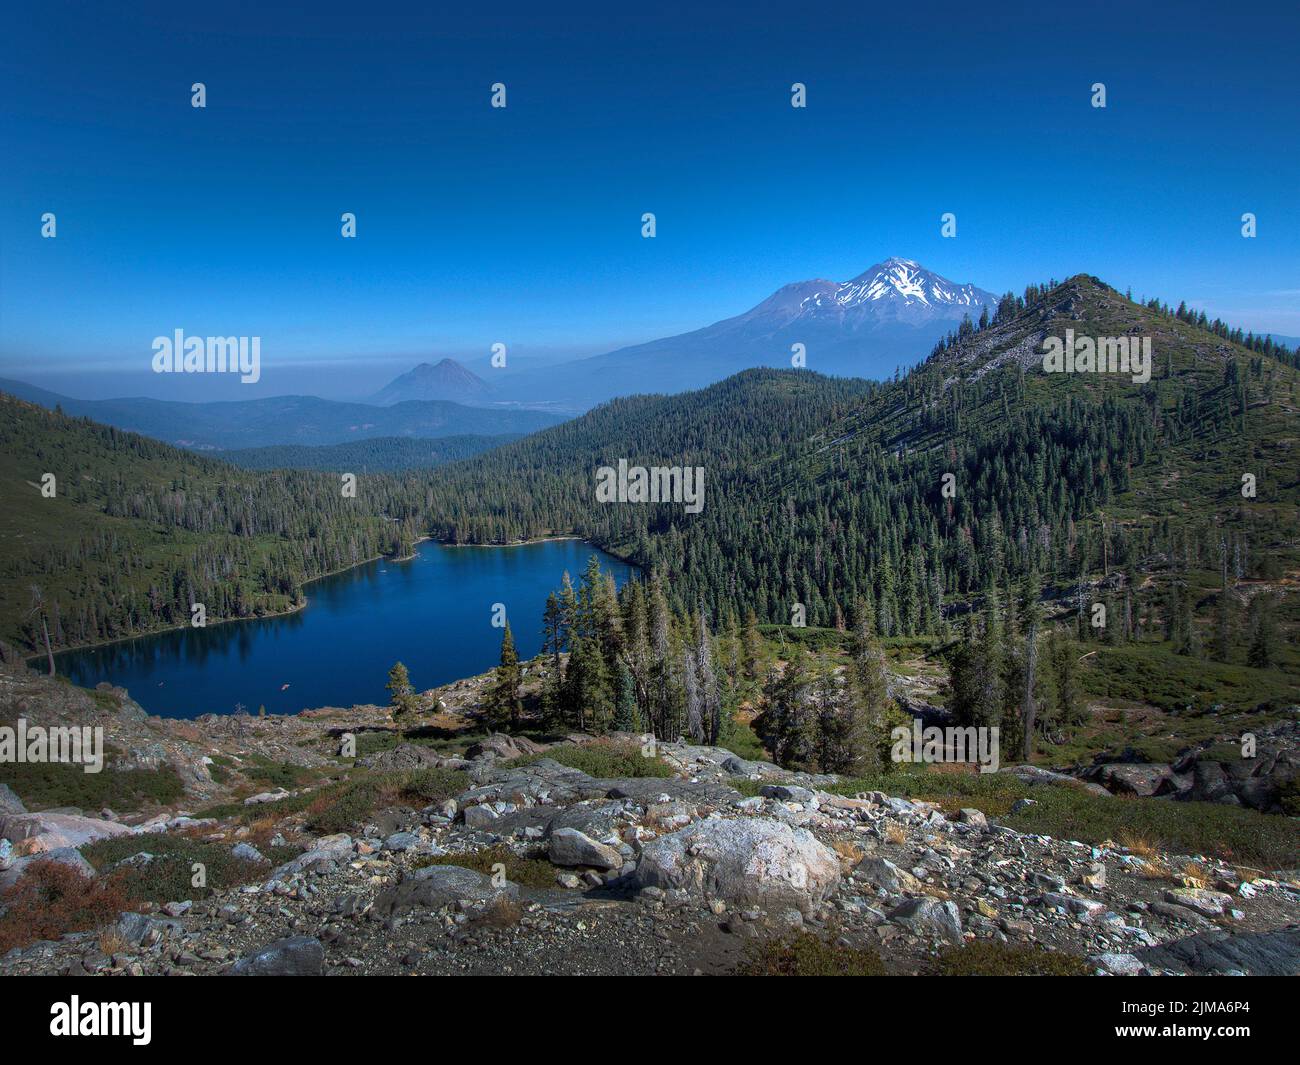 Pic de la montagne Shasta depuis le parc surplombant la vallée avec étang. Banque D'Images